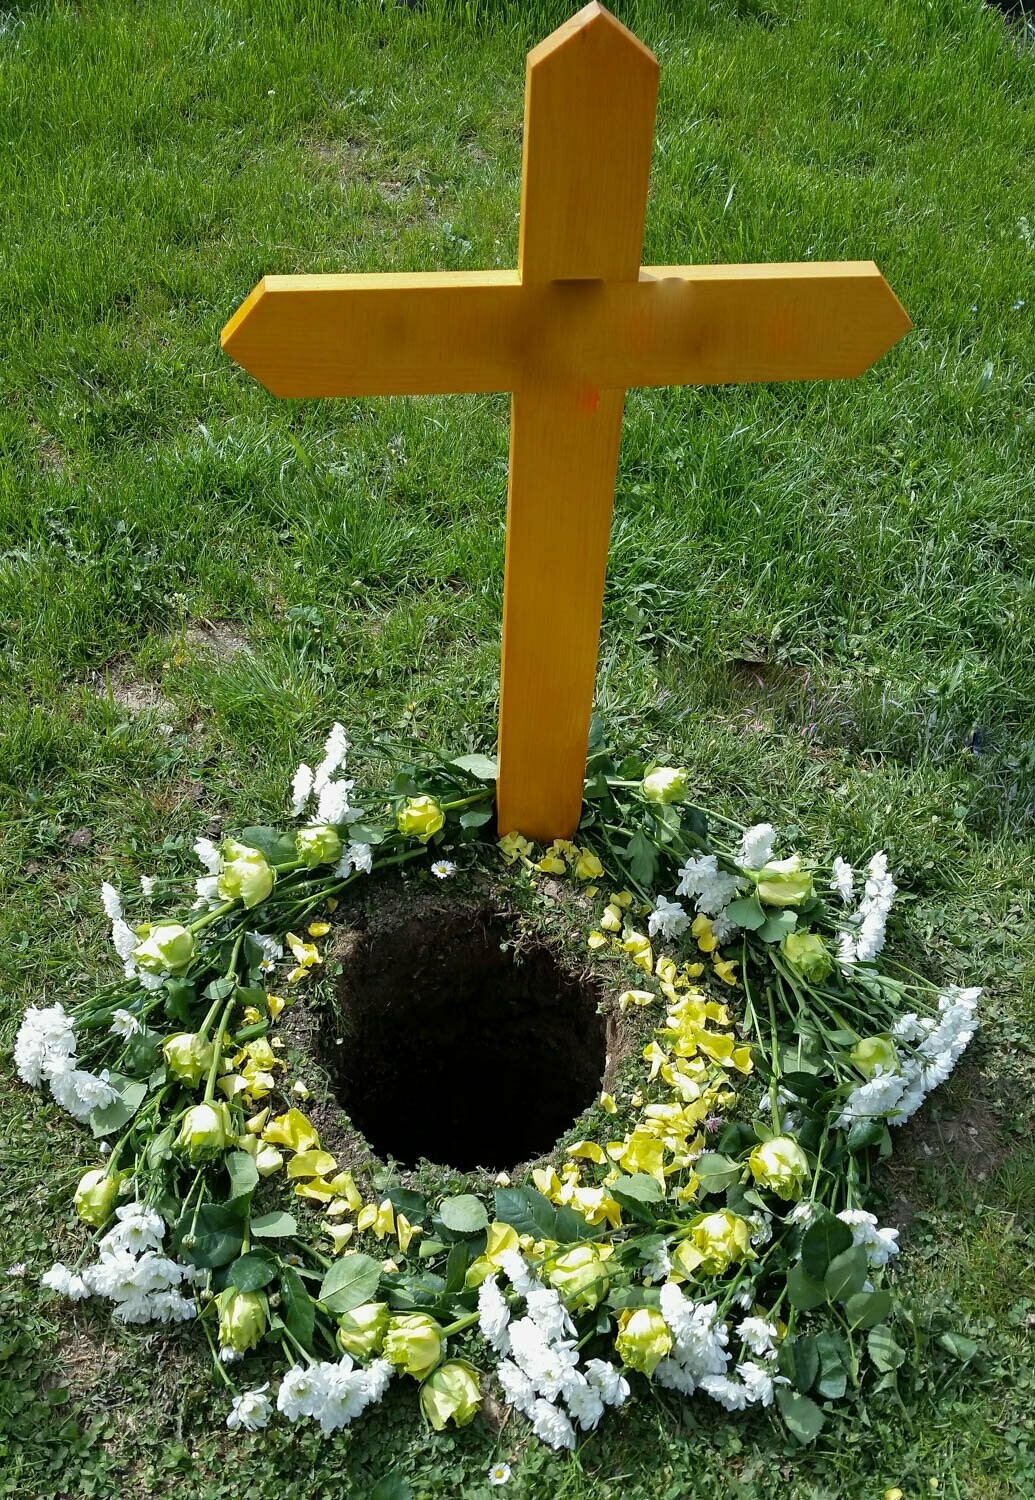 Dekoration am Urnengrab - Gestaltung mit Blüten und einem Streukörbchen